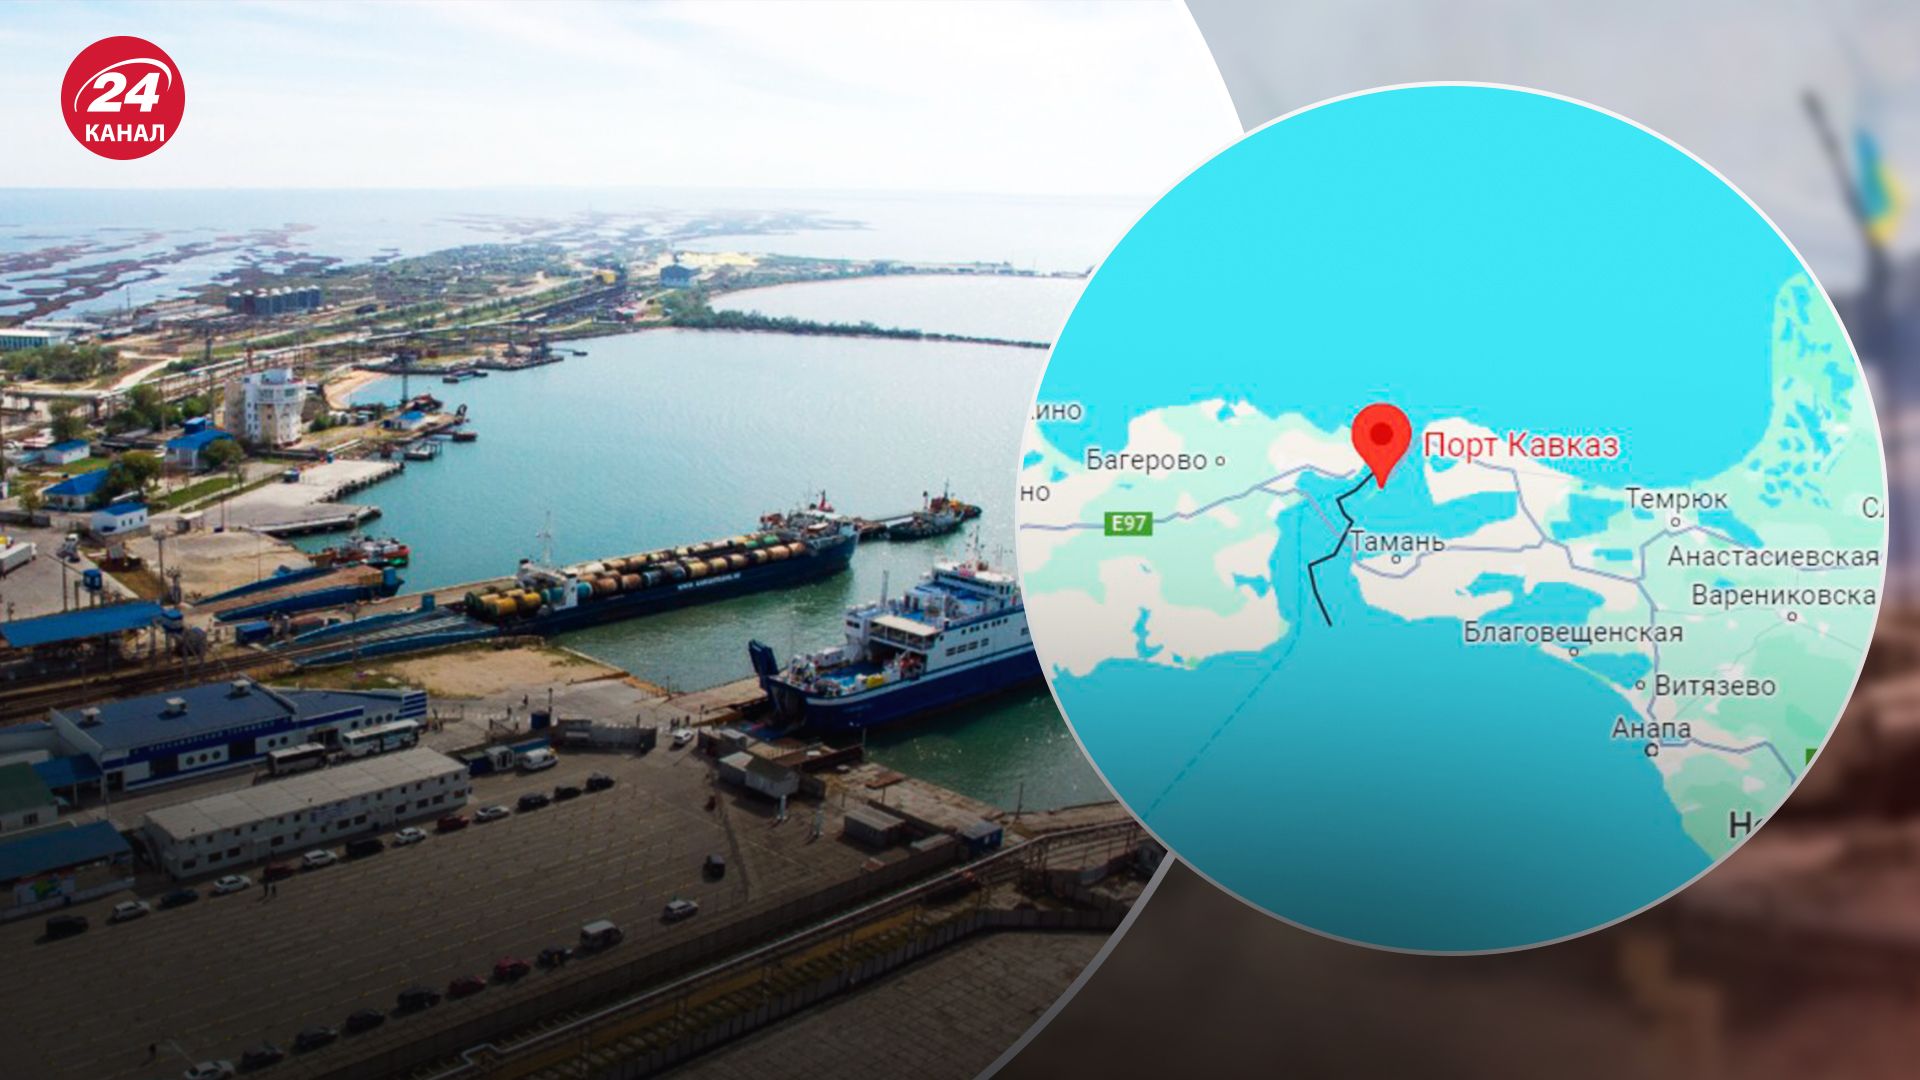 БпЛА атаковали паром в Краснодарском крае: показываем на карте, где расположен порт "Кавказ" - 24 Канал